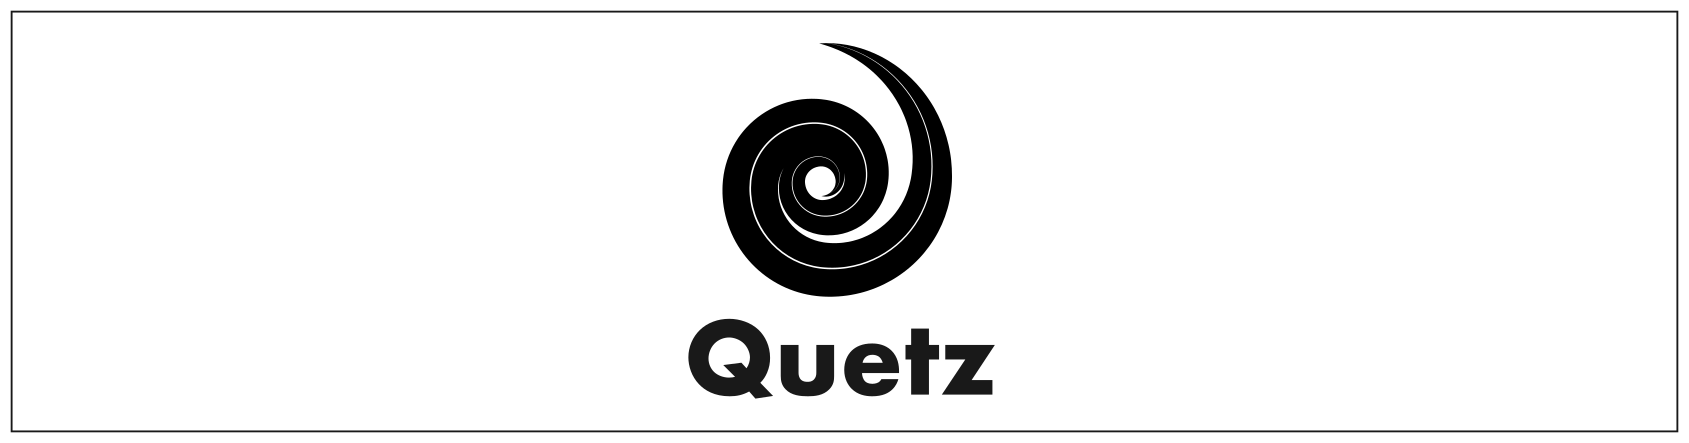 quetz header image